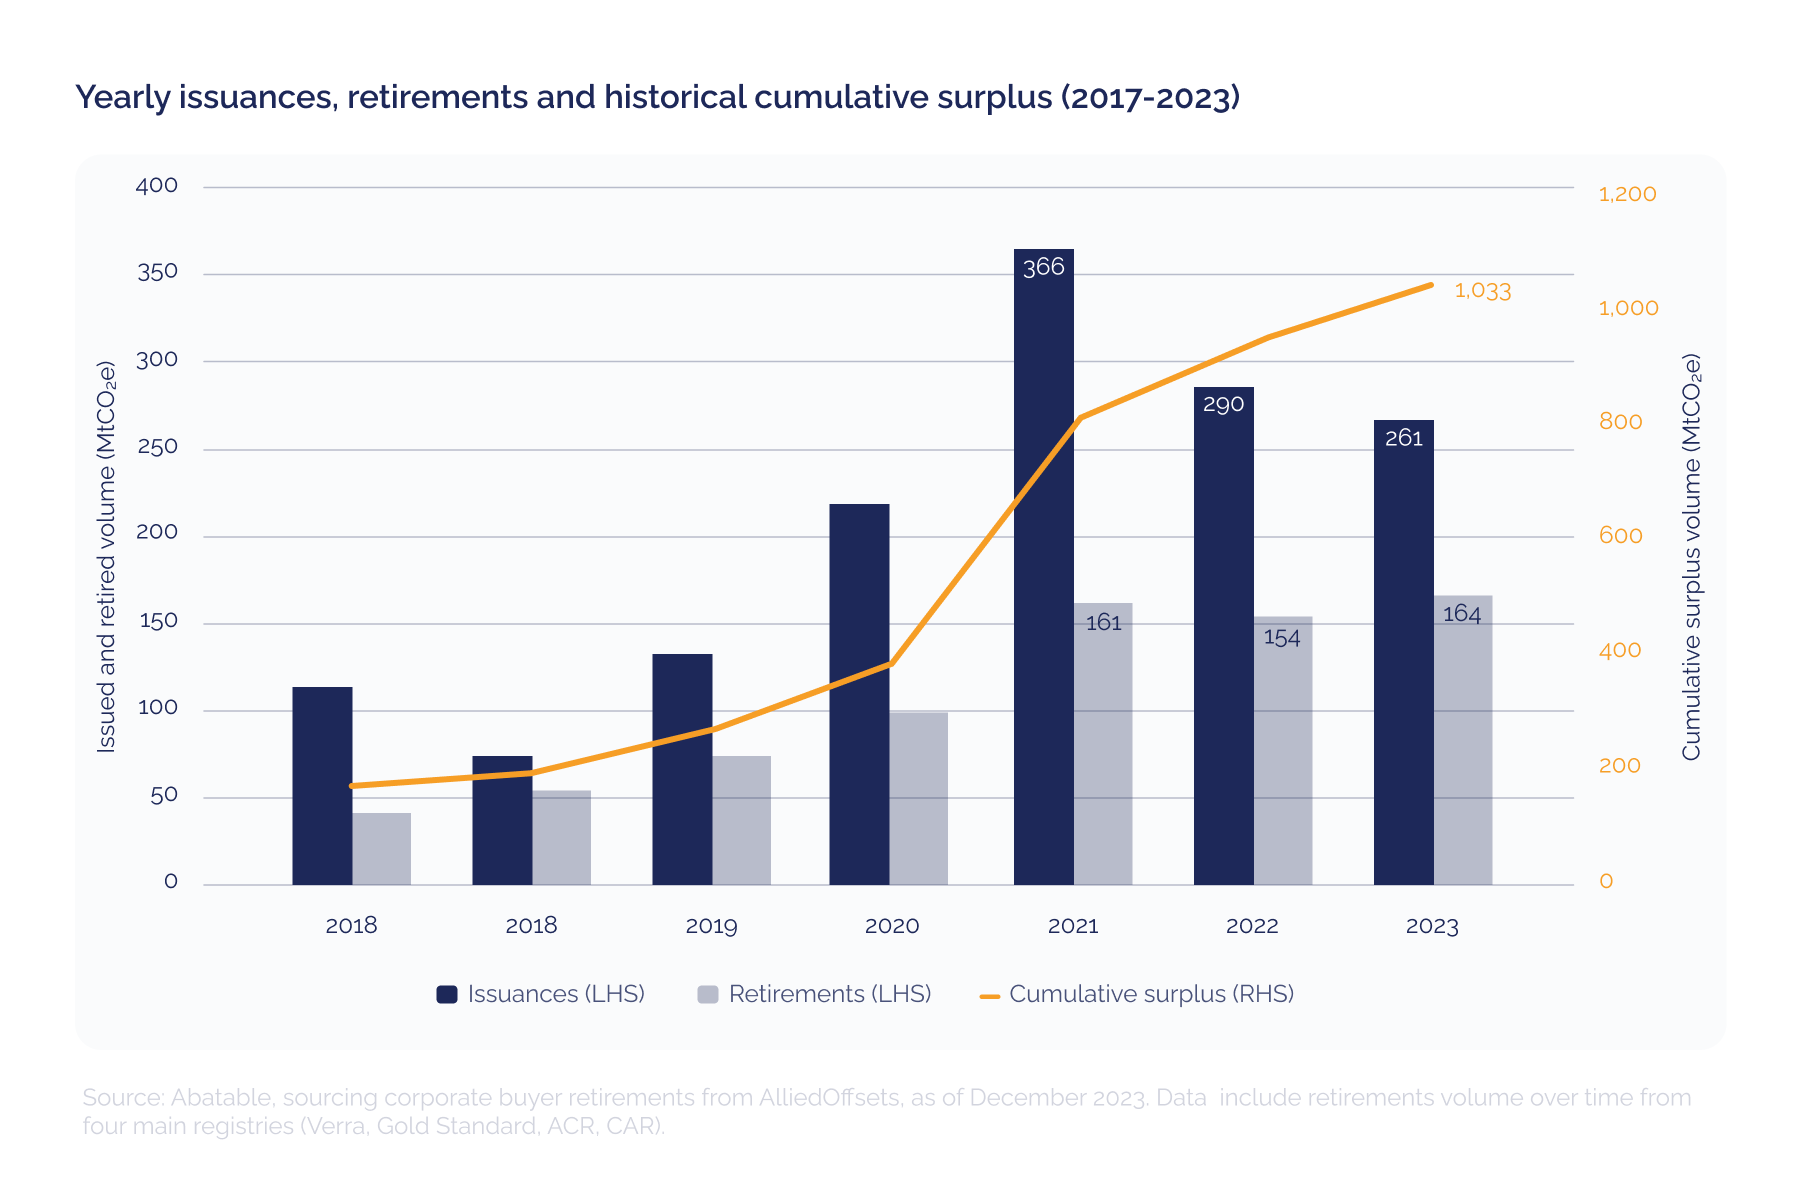 الإصدارات السنوية وحالات التقاعد والفائض التراكمي التاريخي (2017-2023)